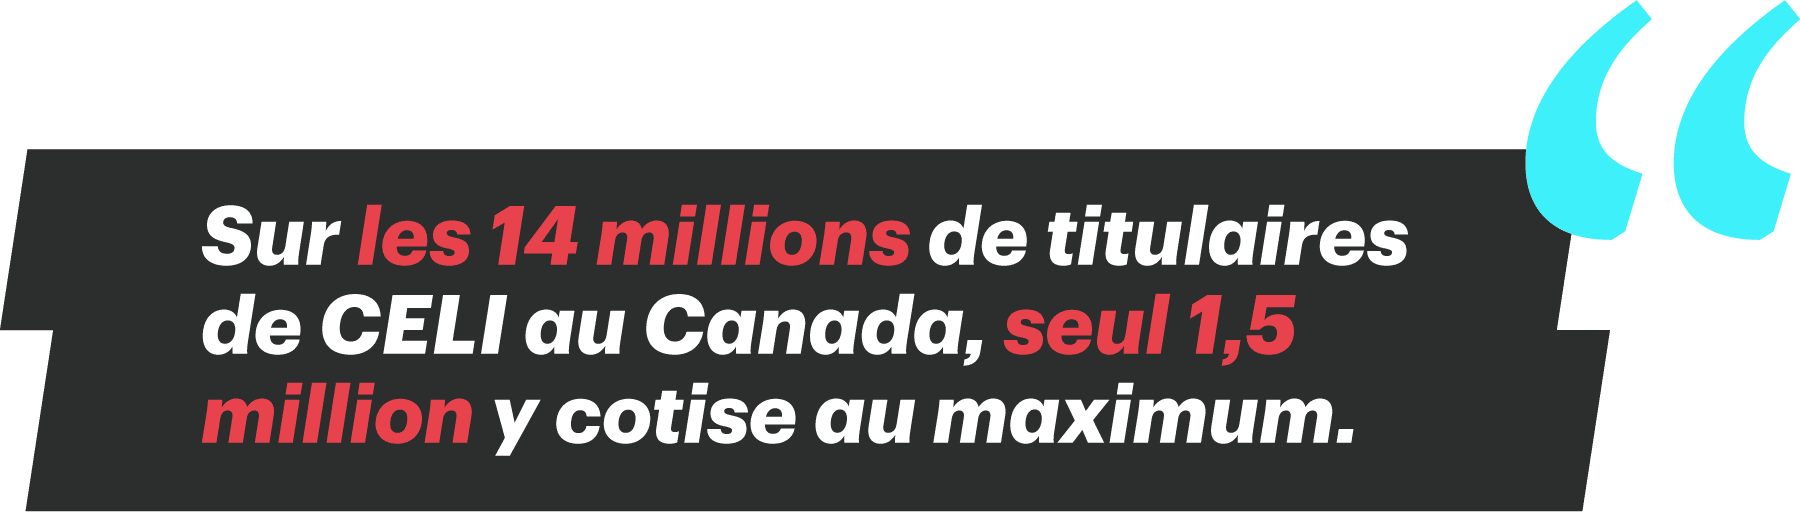 Sur les 14 millions de titulaires de CELI au Canada, seul 1,5 million y cotise au maximum.